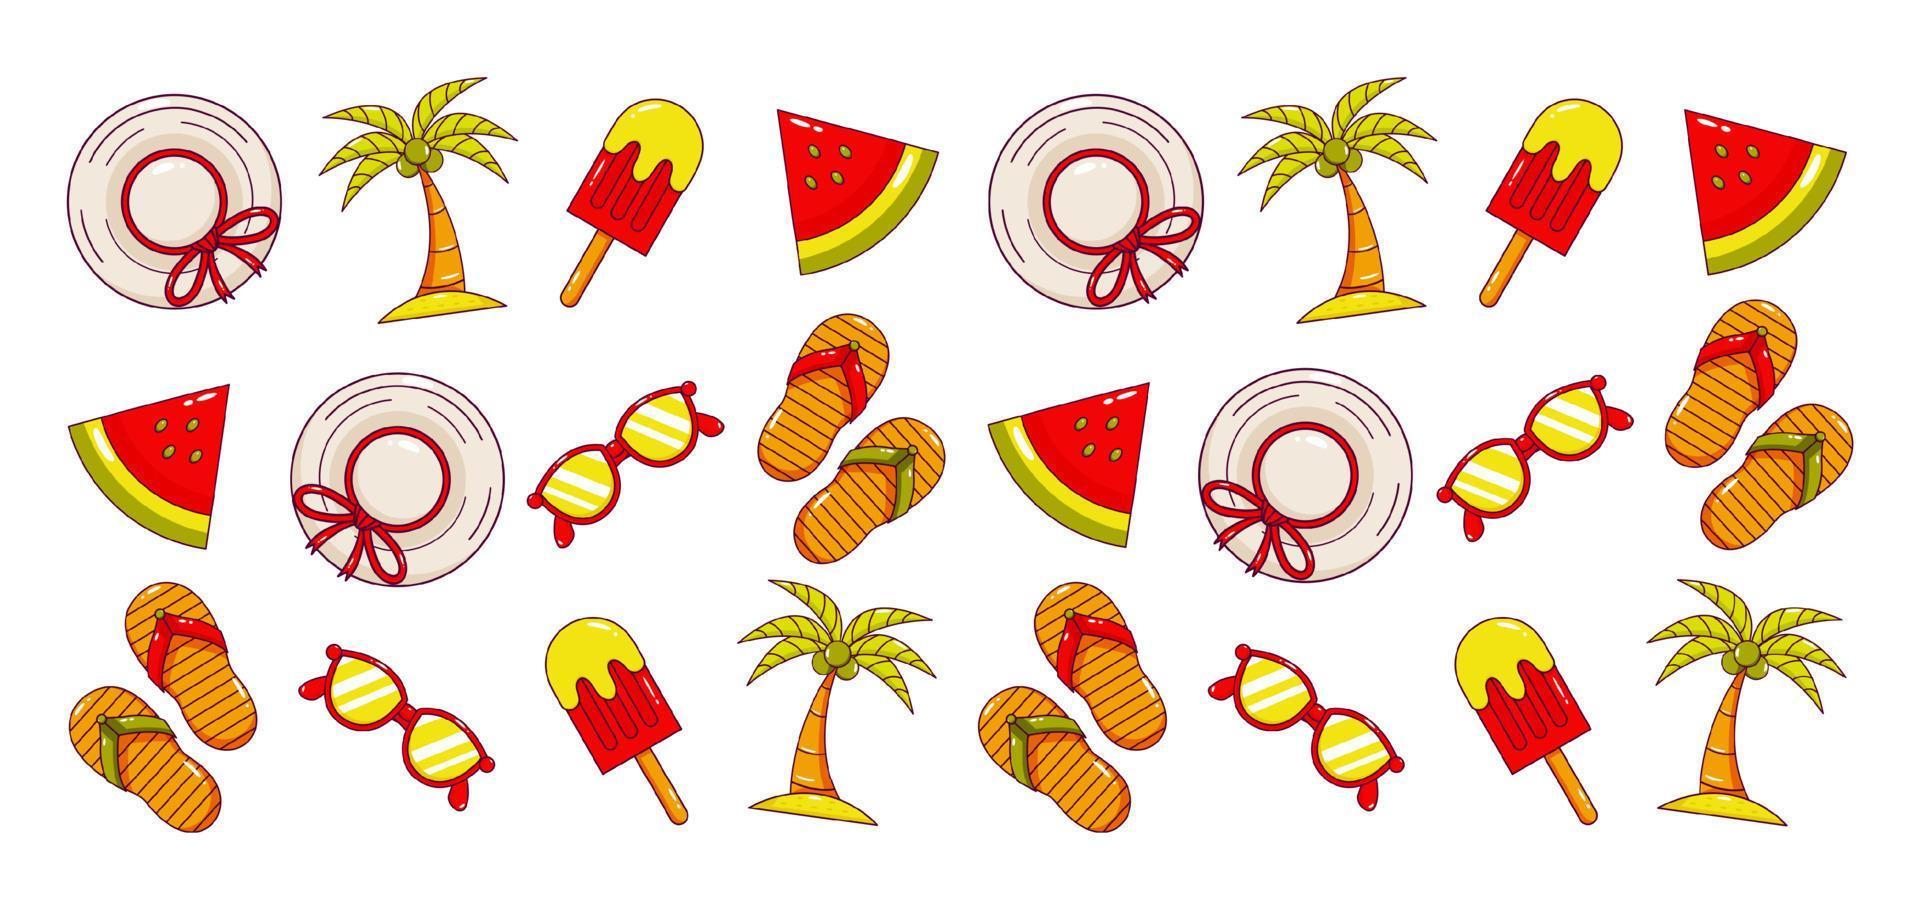 vacaciones de verano. patrón de icono de sombrero, gafas, helado, sandalias, árbol de coco y sandía vector